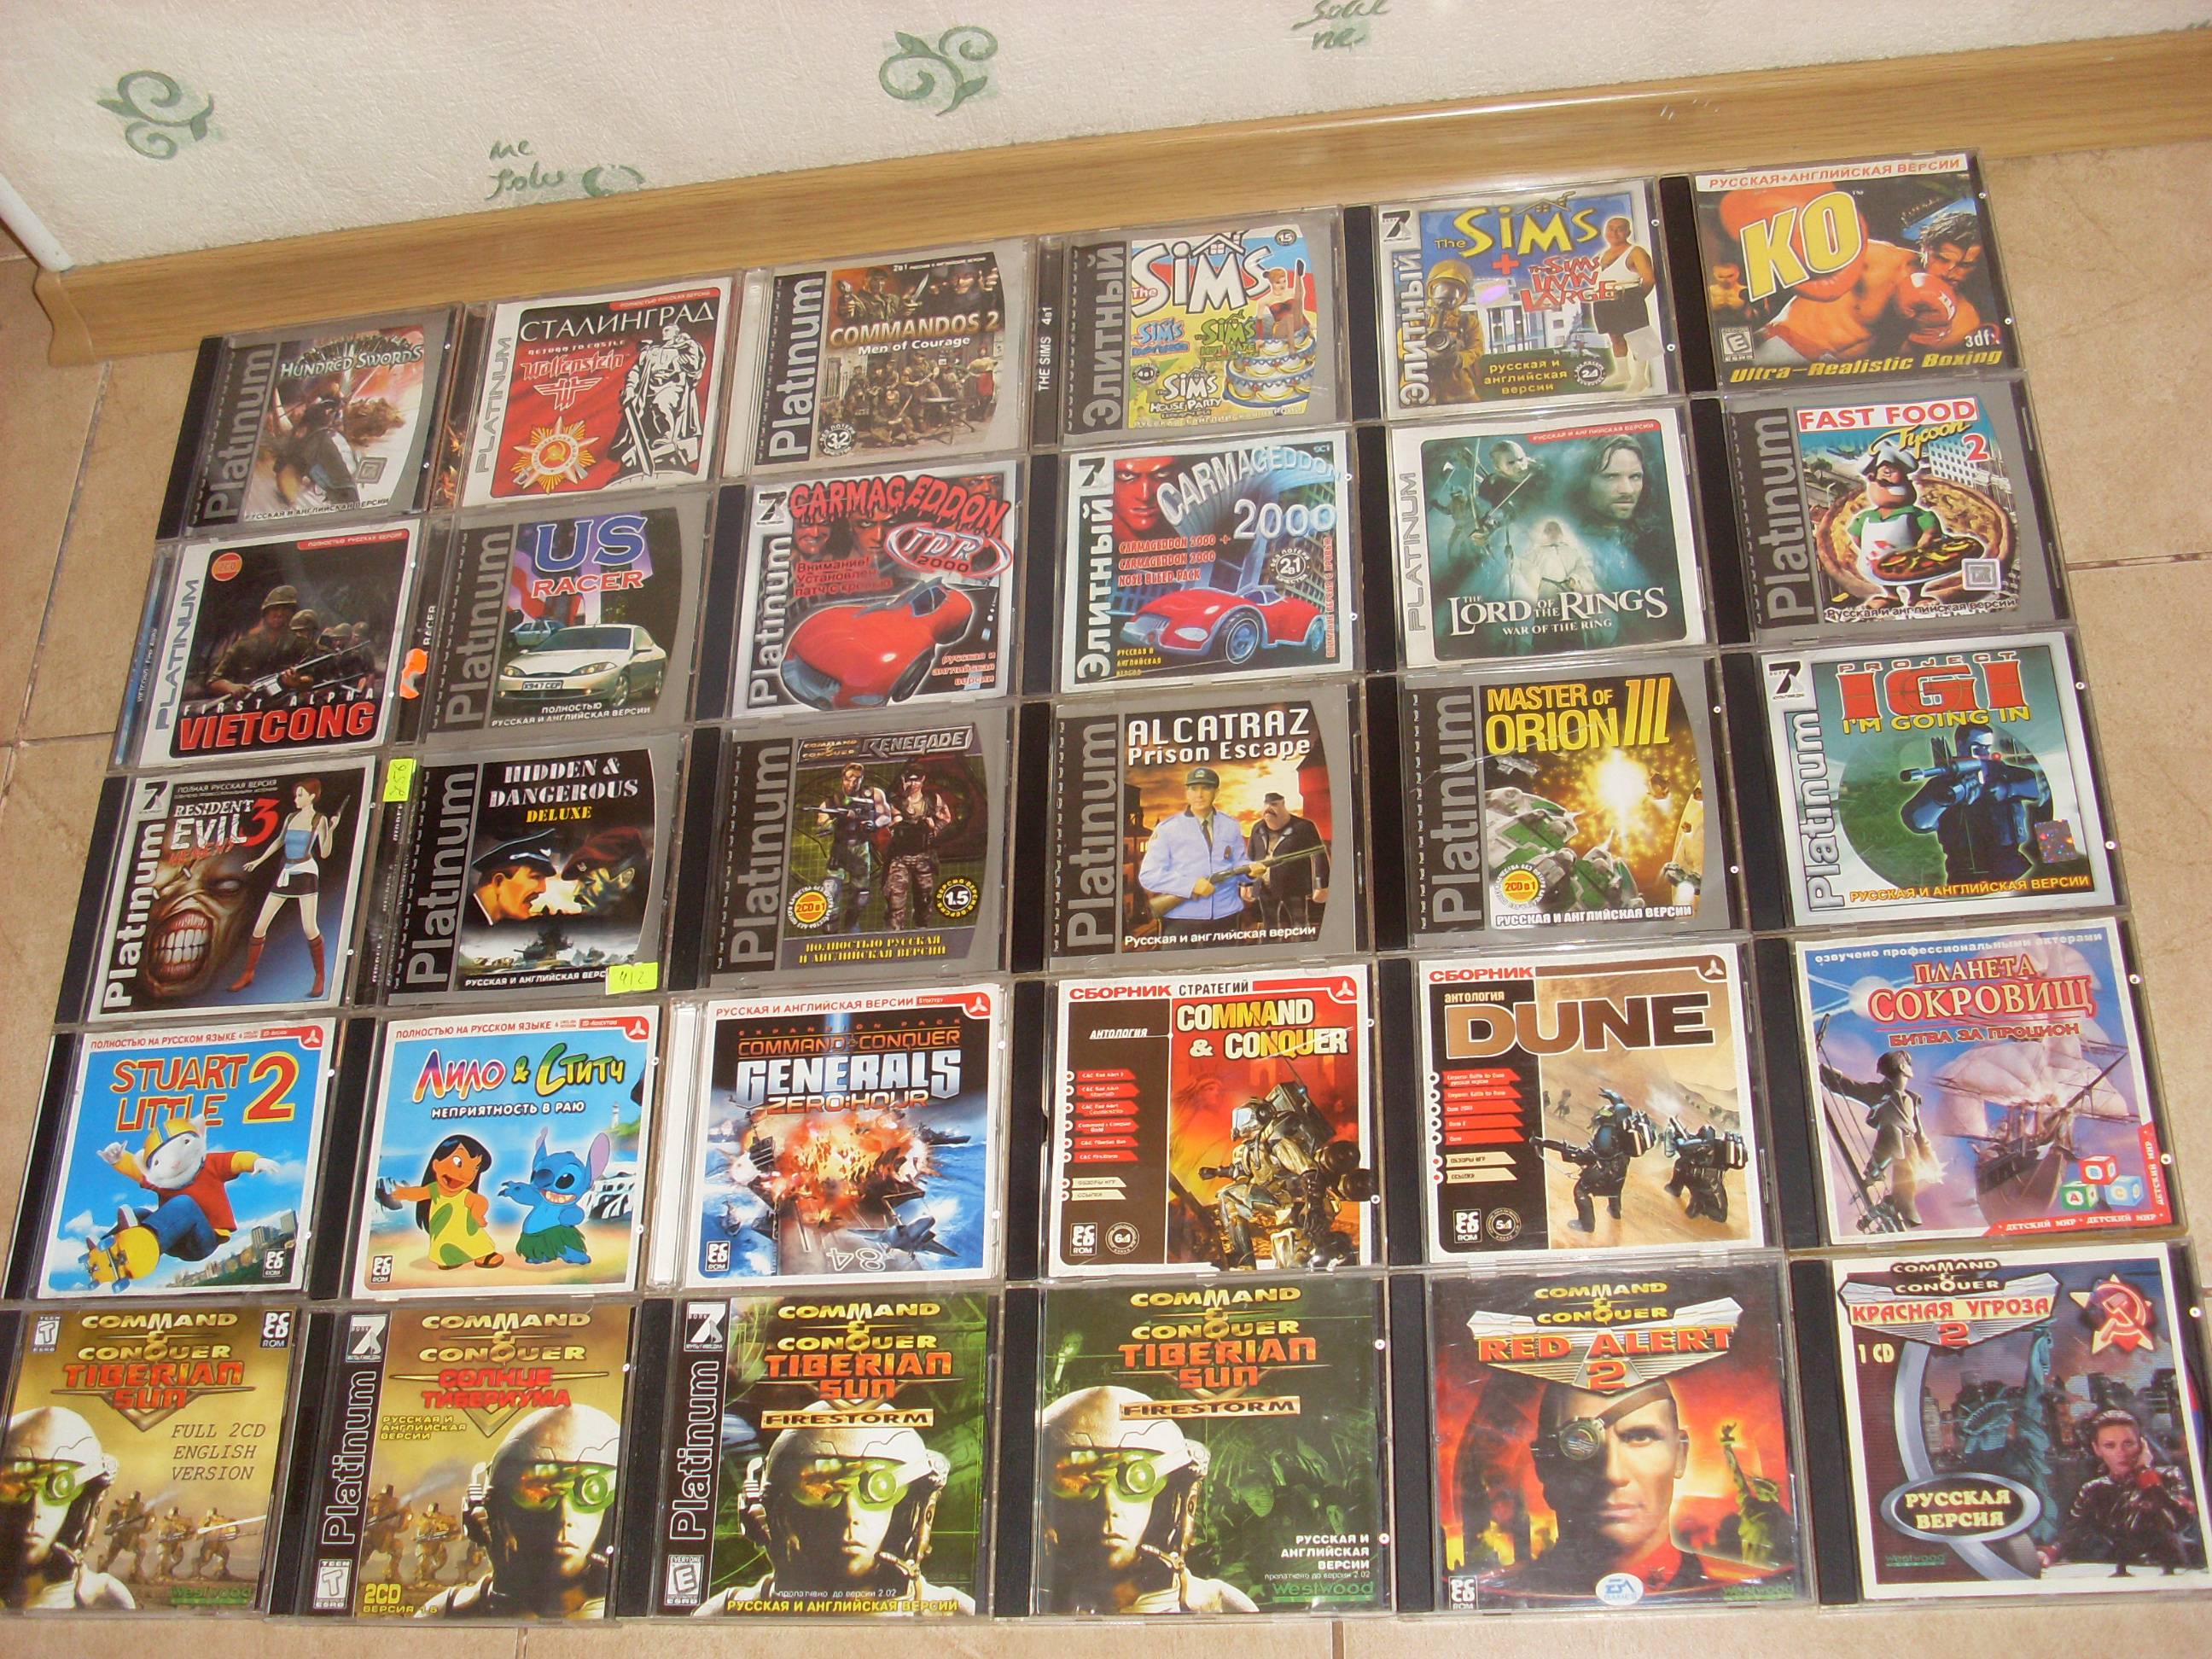 My old games. Коллекция старых игр. Коробки от дисков старых игр.